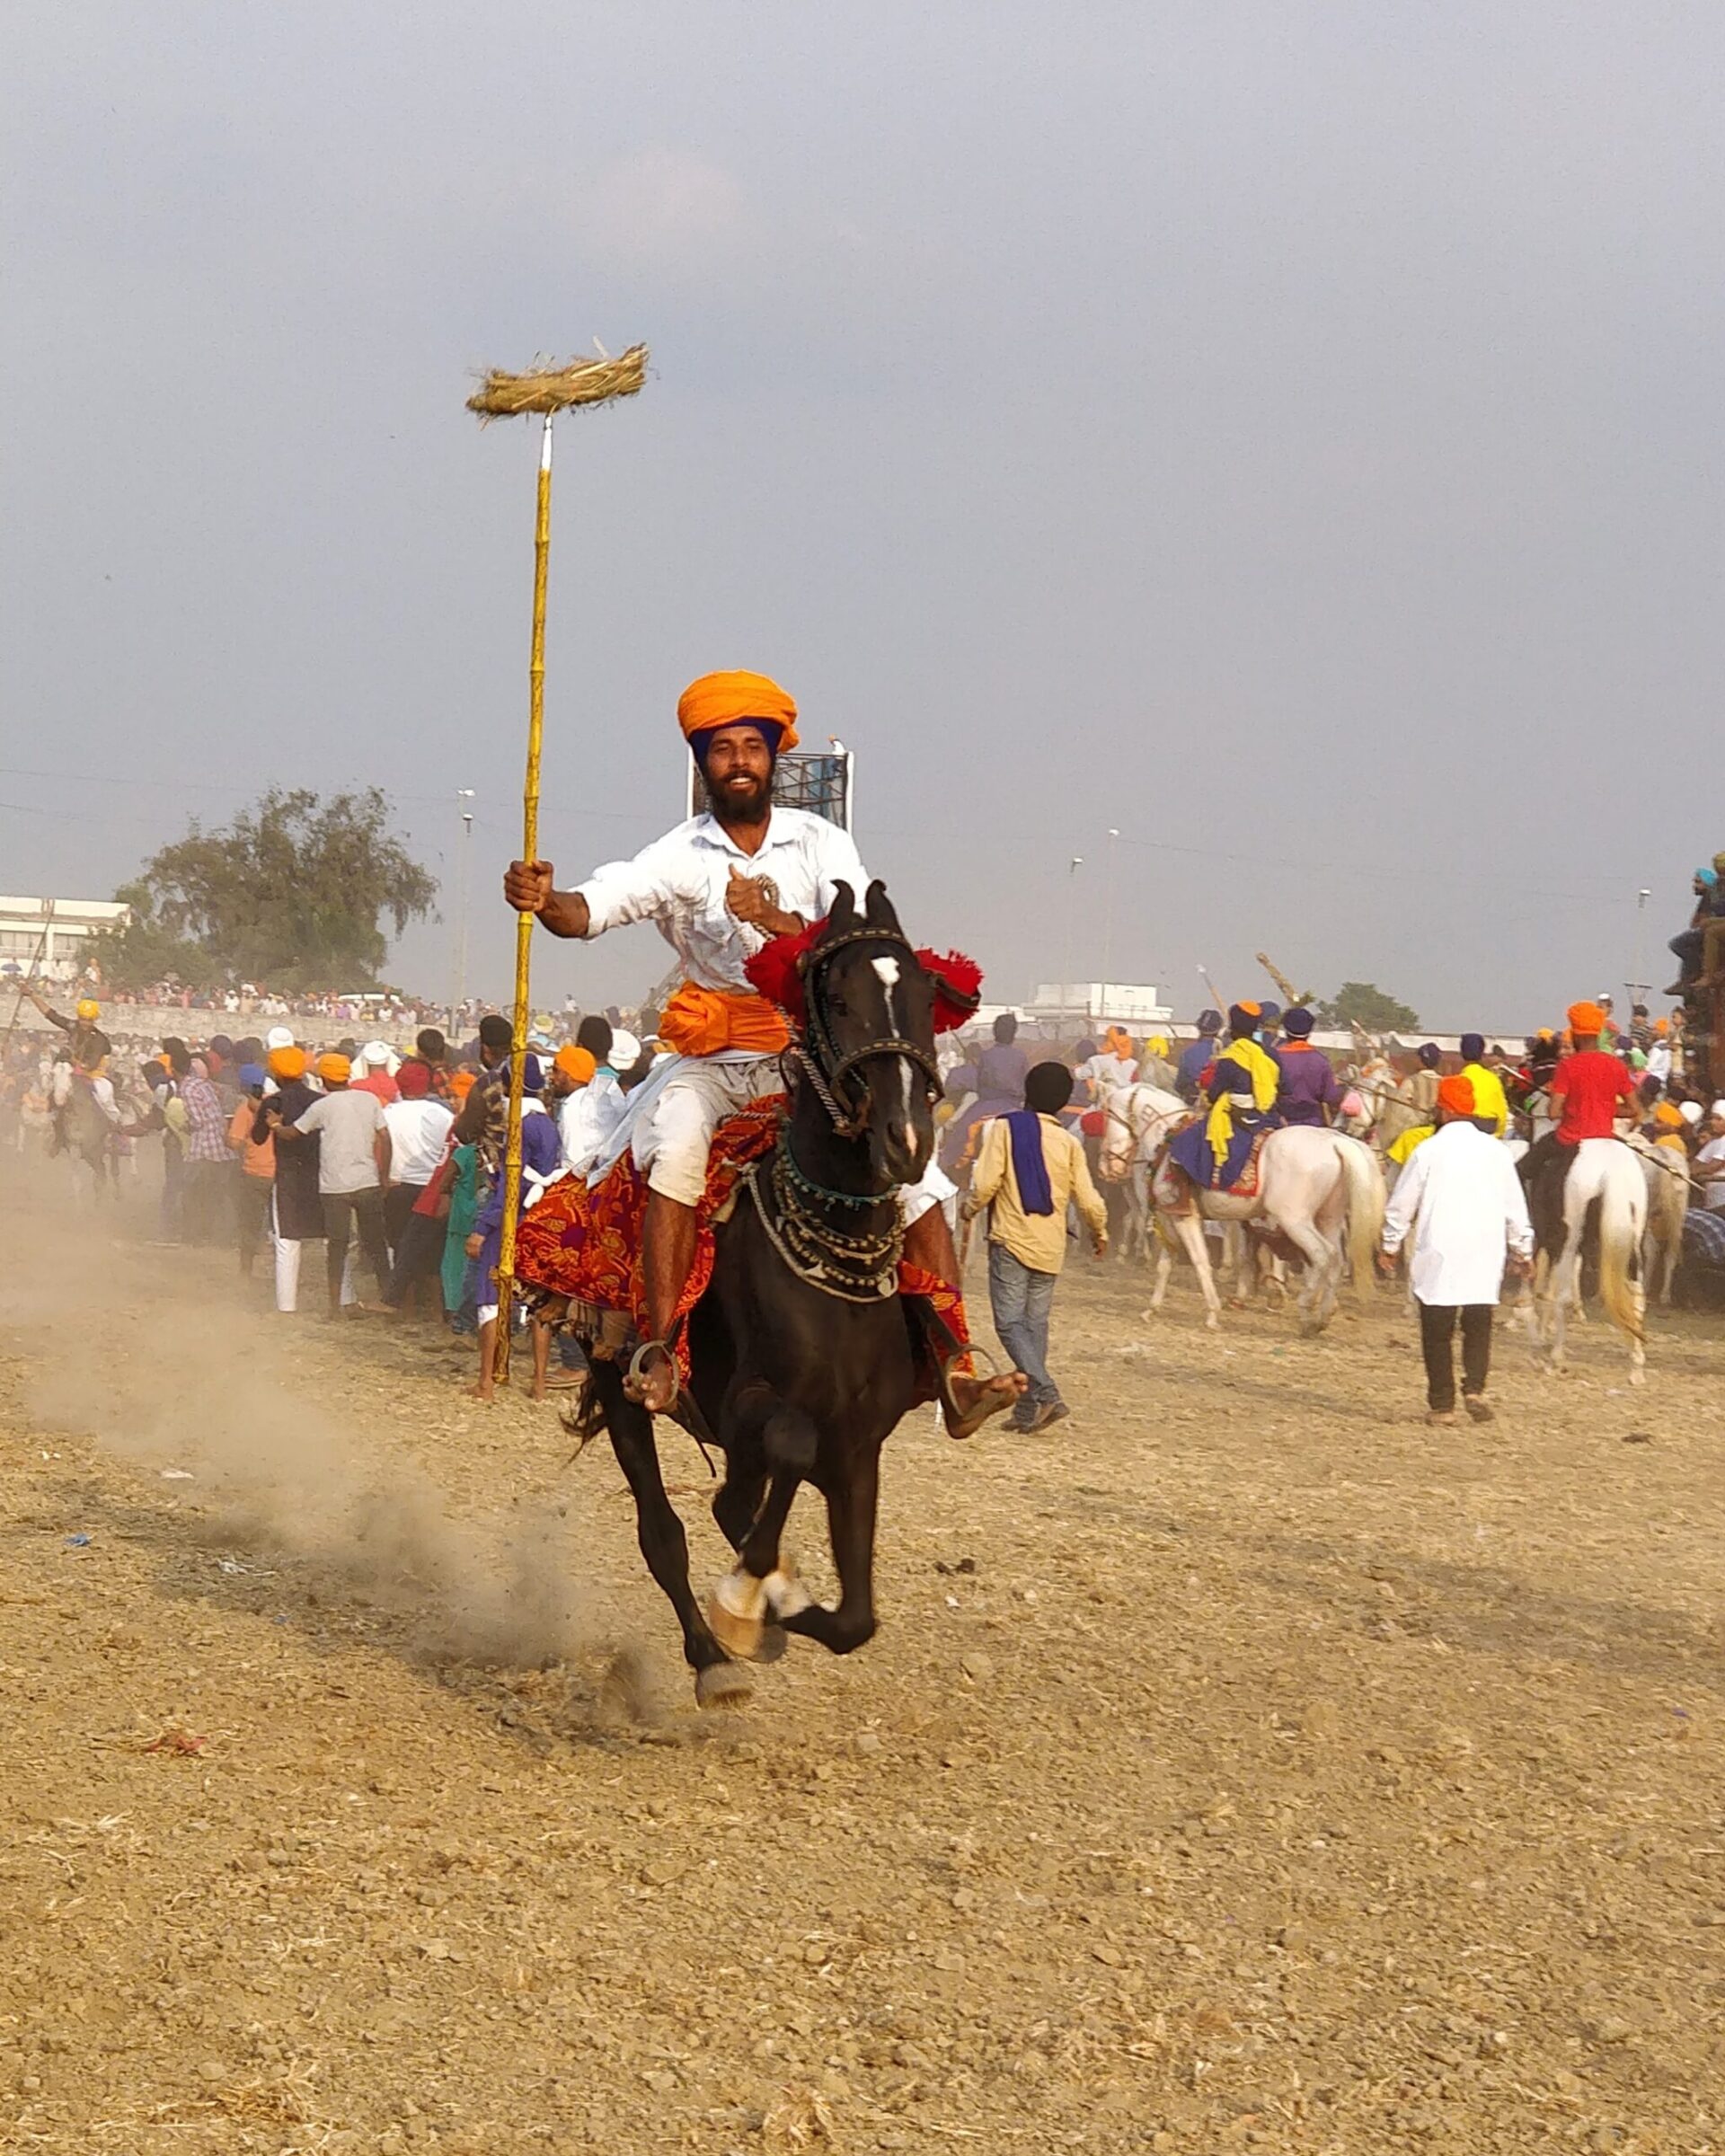 Nihang kriger rider på hest Indien